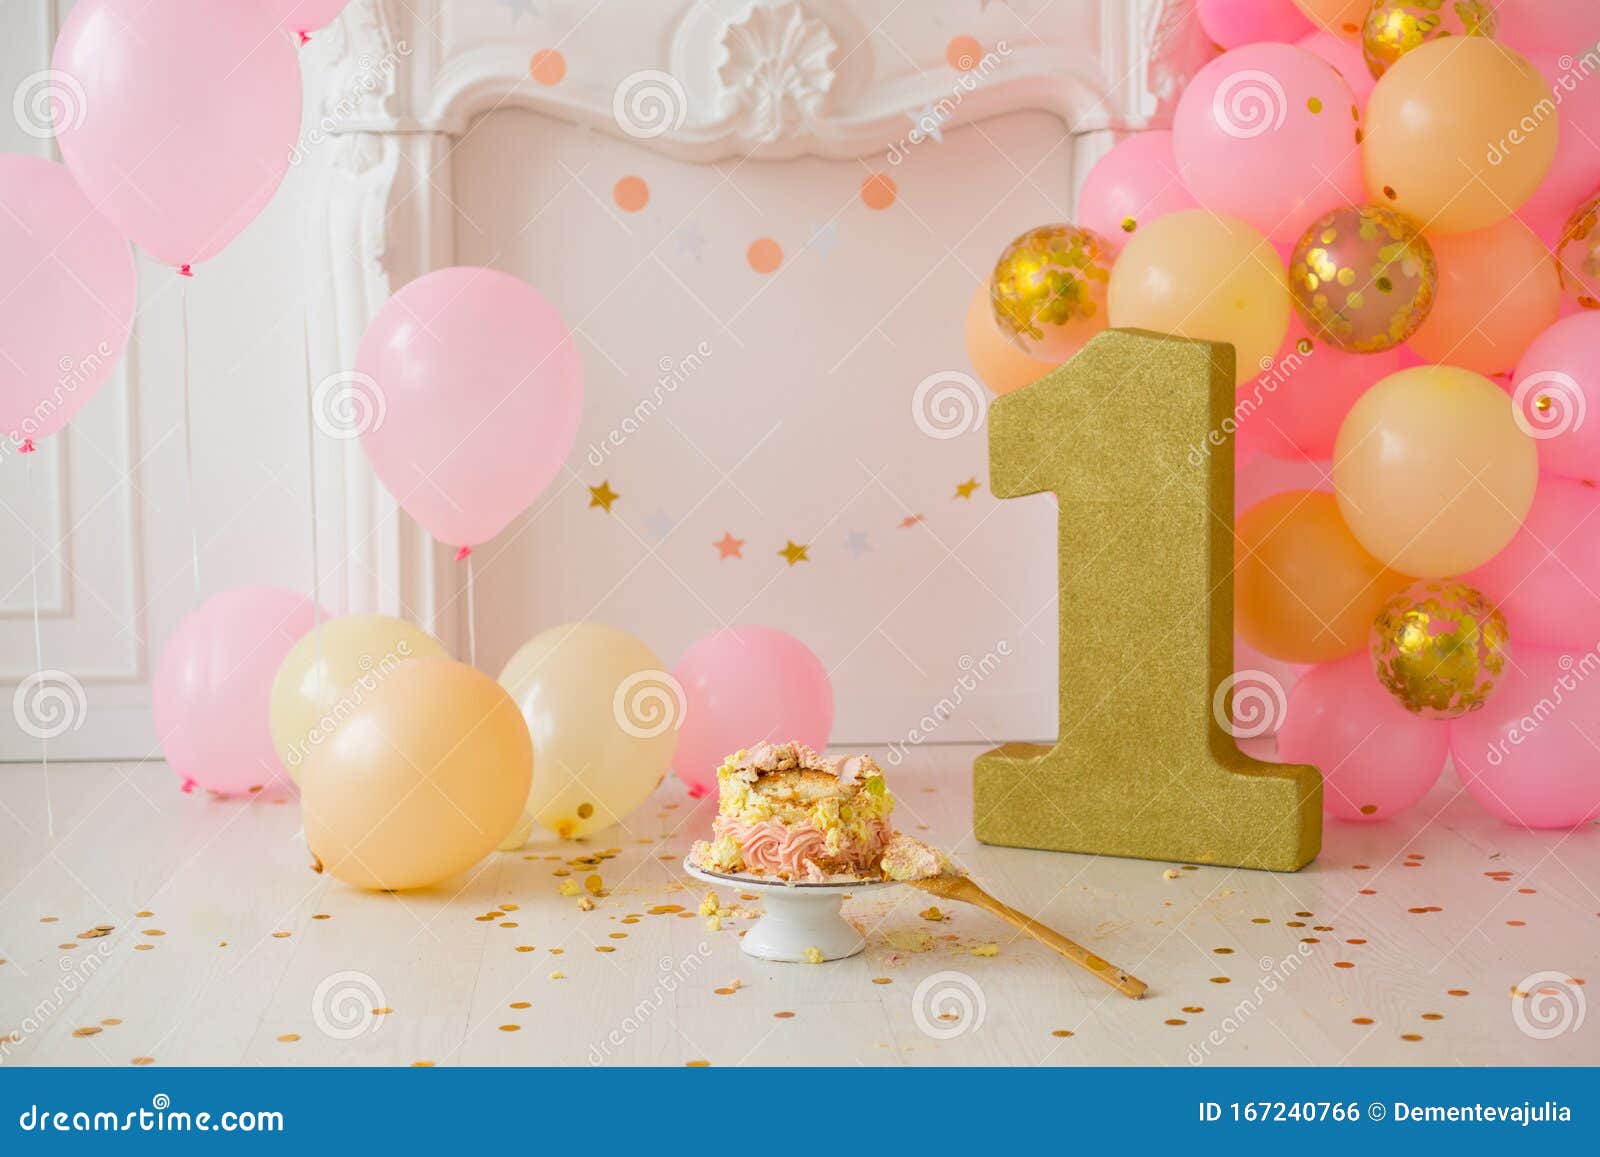 Background First Birthday with Smash Cake Stock Photo - Image of beautiful,  celebration: 167240766